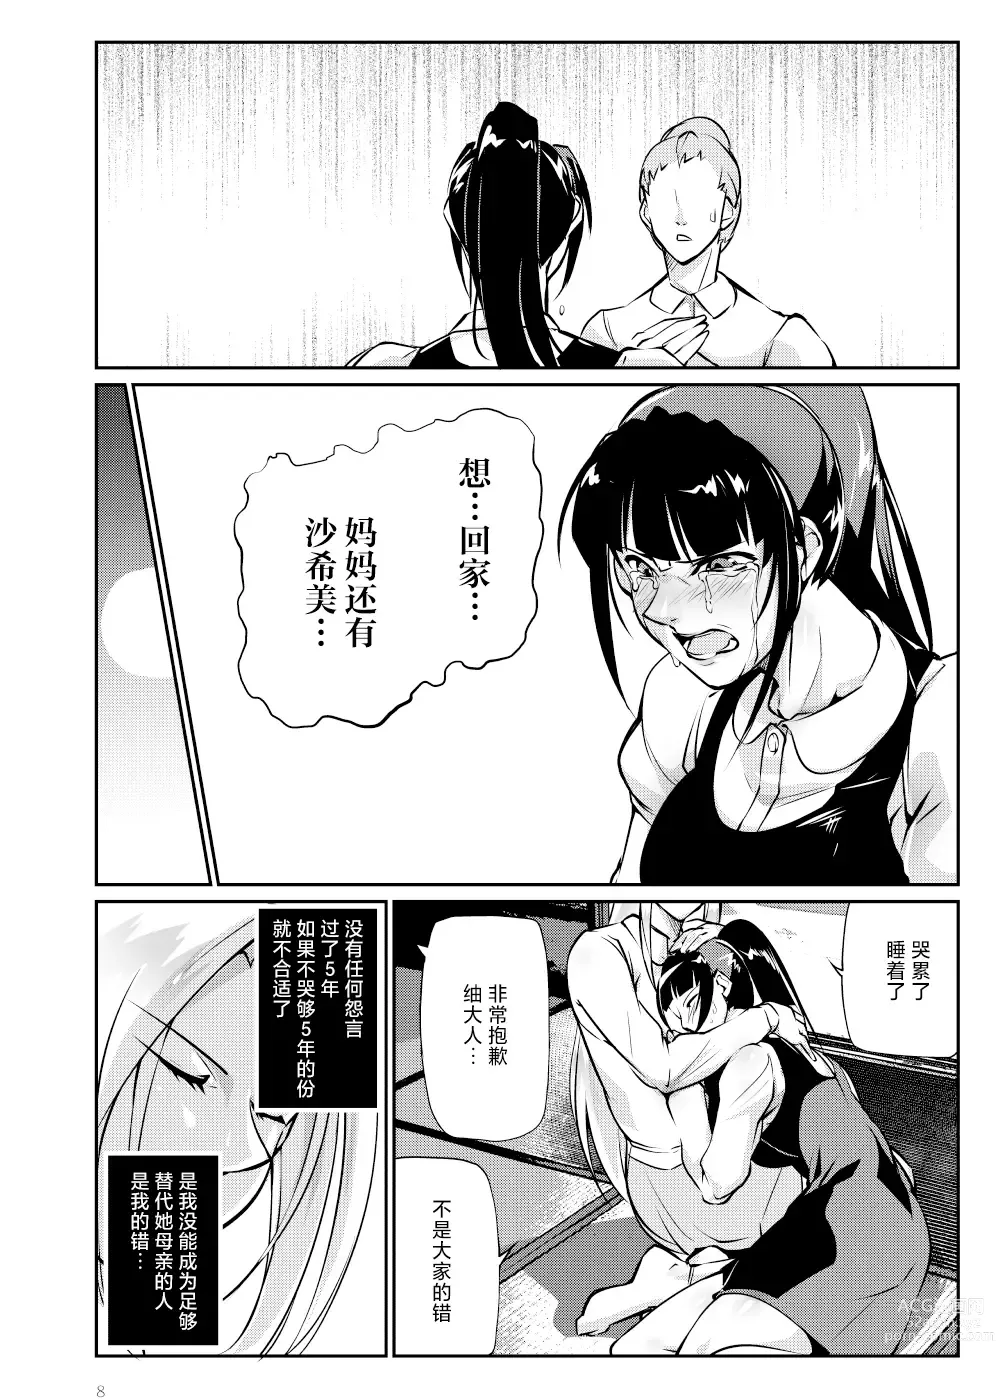 Page 7 of doujinshi Tougijou Rin - Arena Rin 4